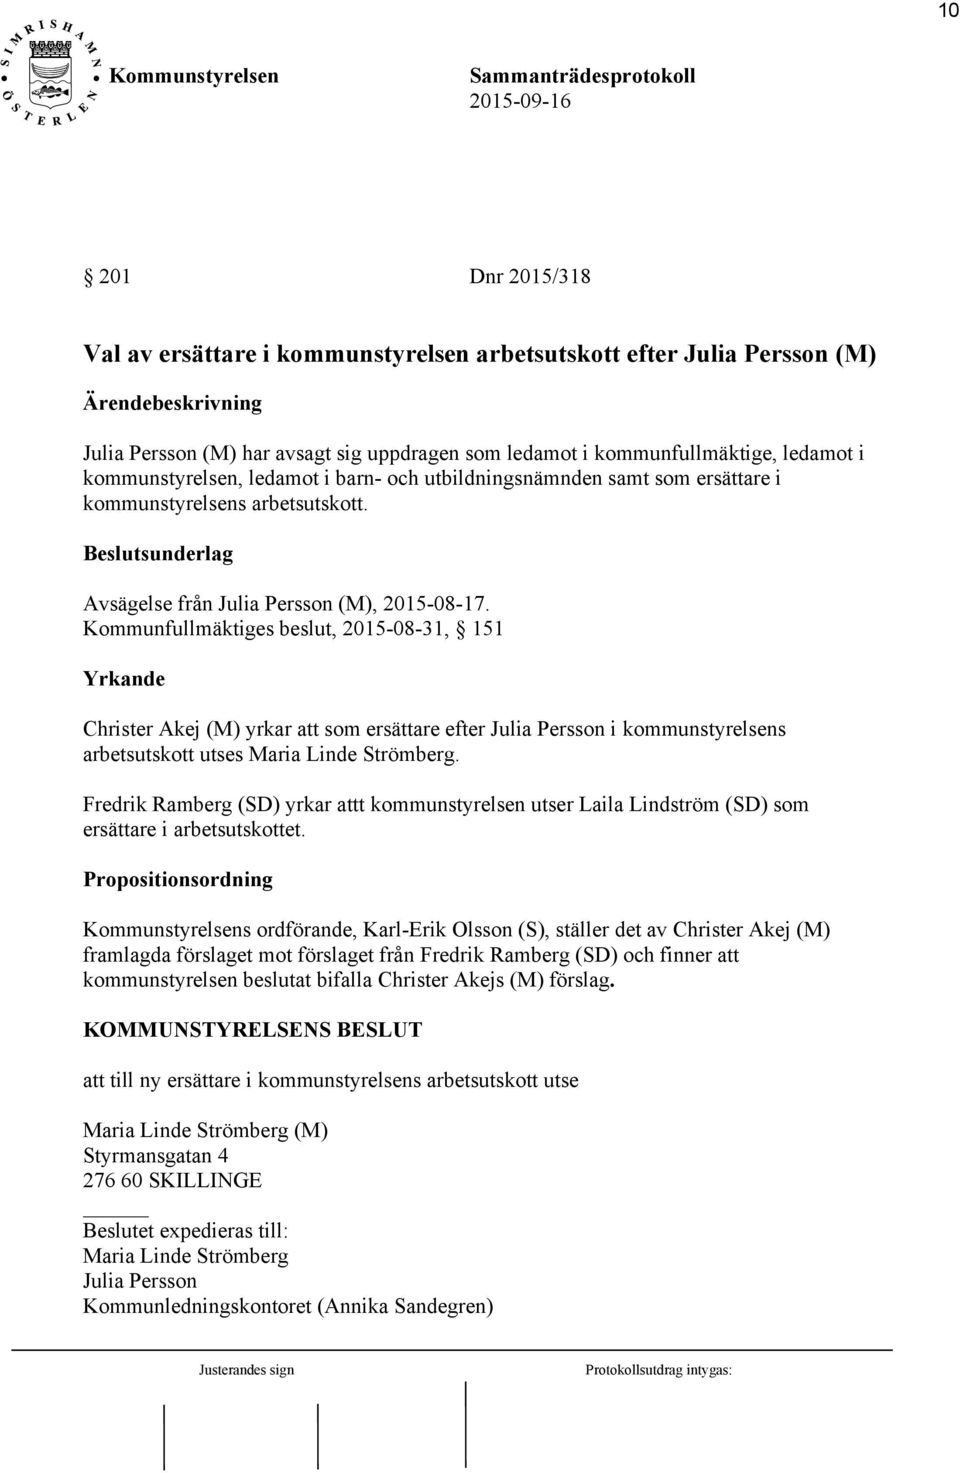 Kommunfullmäktiges beslut, 2015-08-31, 151 Yrkande Christer Akej (M) yrkar att som ersättare efter Julia Persson i kommunstyrelsens arbetsutskott utses Maria Linde Strömberg.